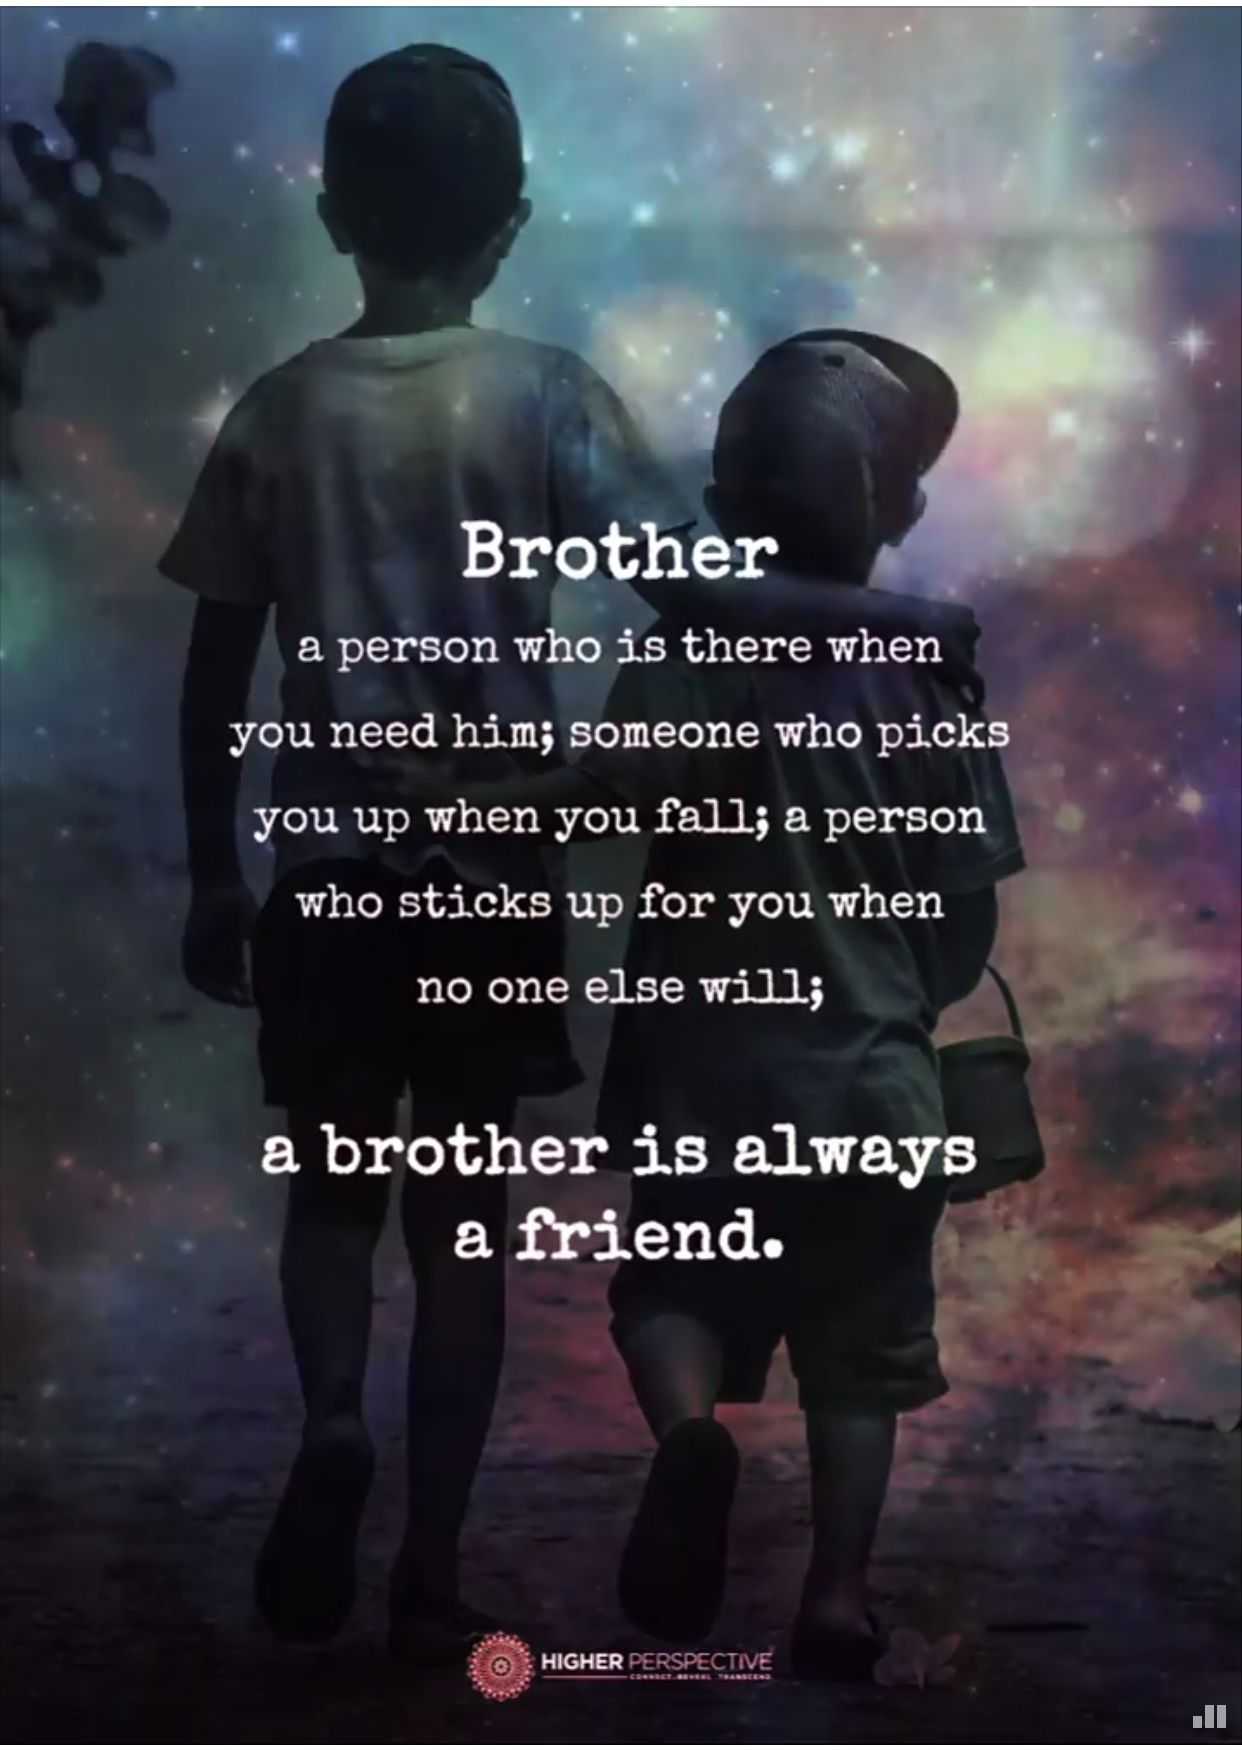 Цитаты про брата со смыслом: фразы и статусы о братьях